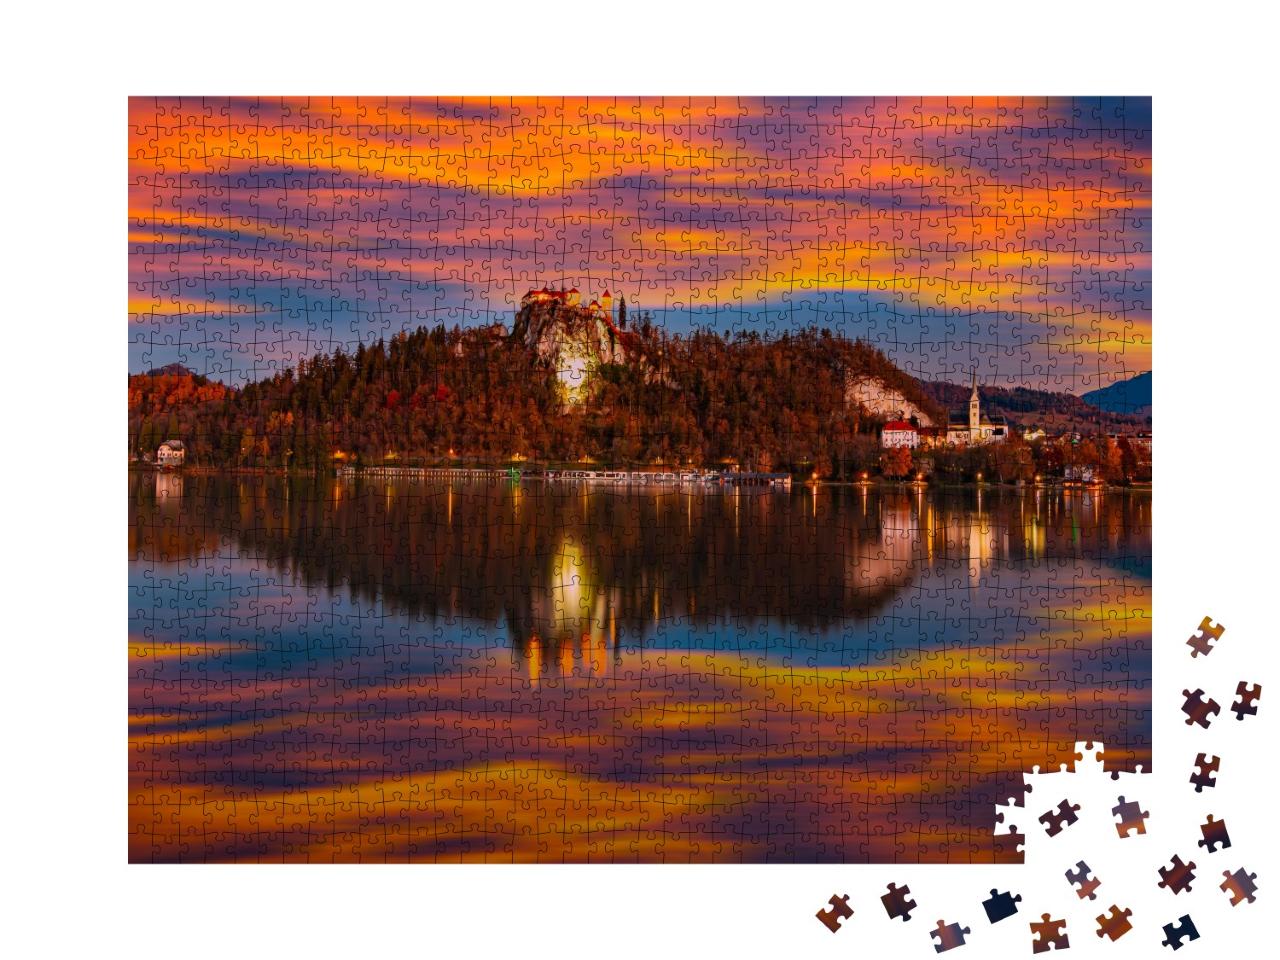 Puzzle de 1000 pièces « Un lac slovène en automne »